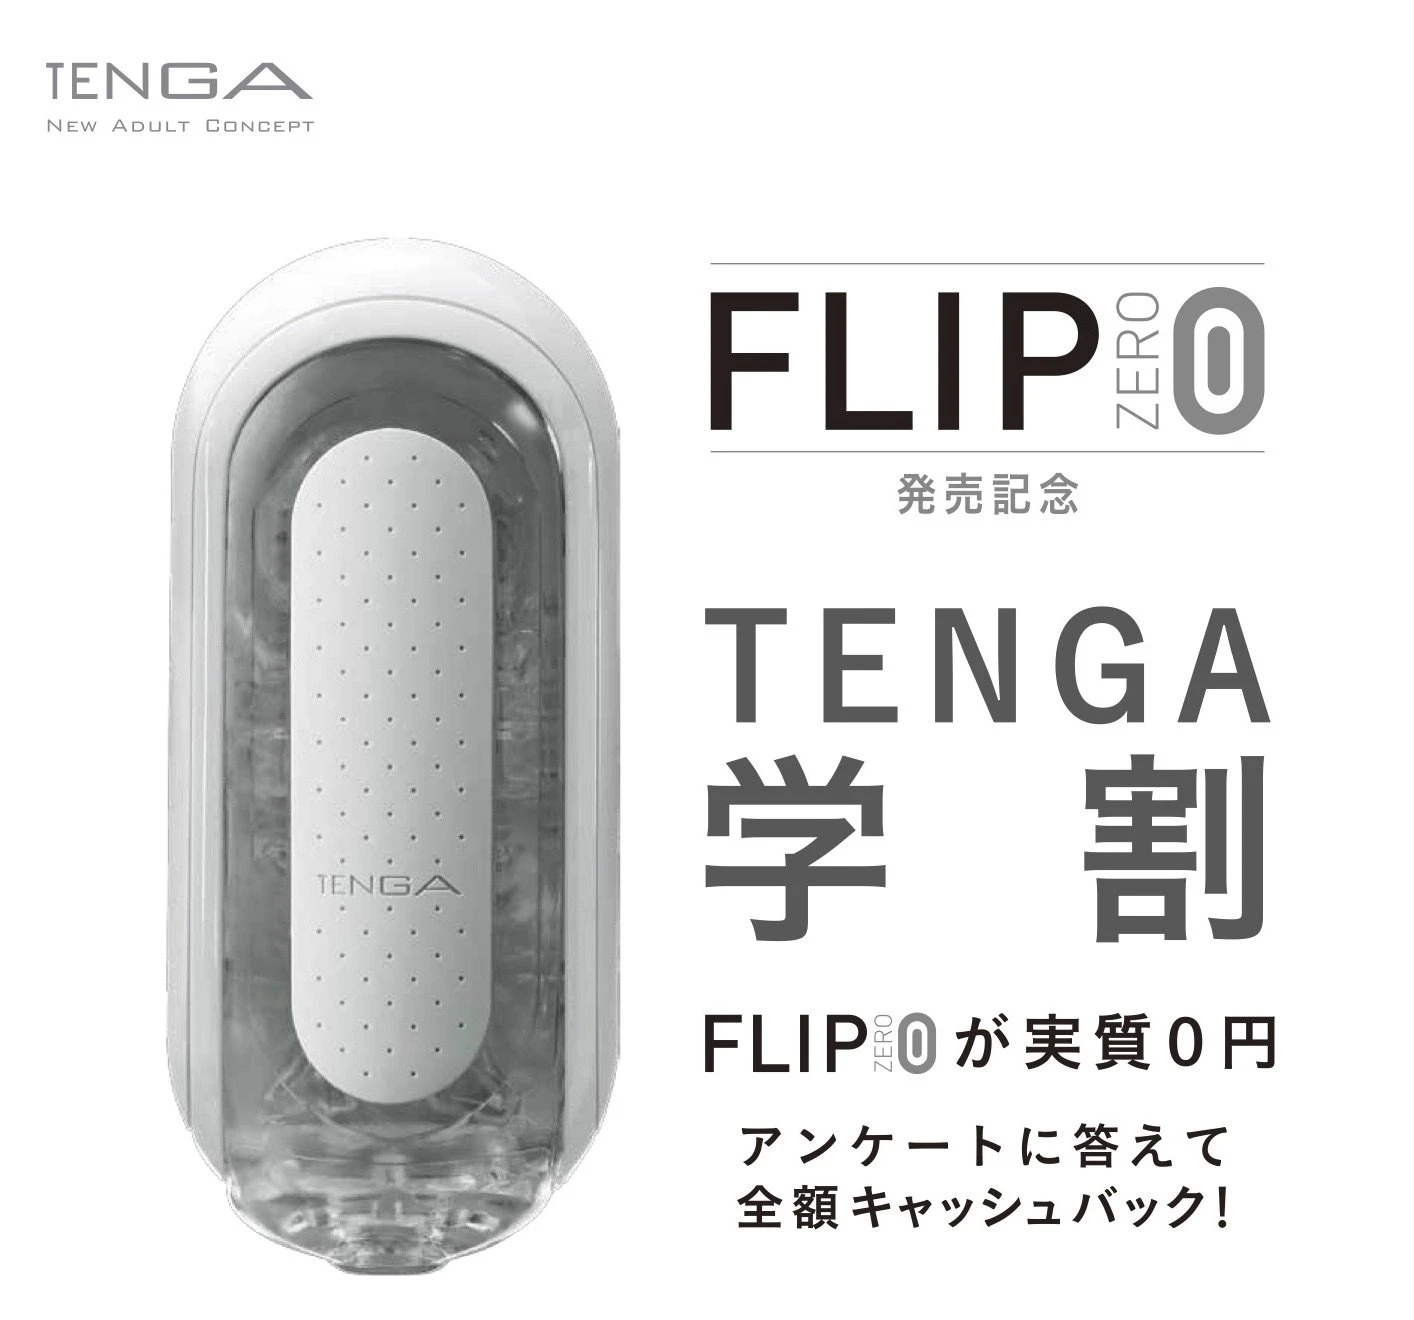 「TENGA学割」 18歳以上の男子学生限定で新作テンガが実質0円に！